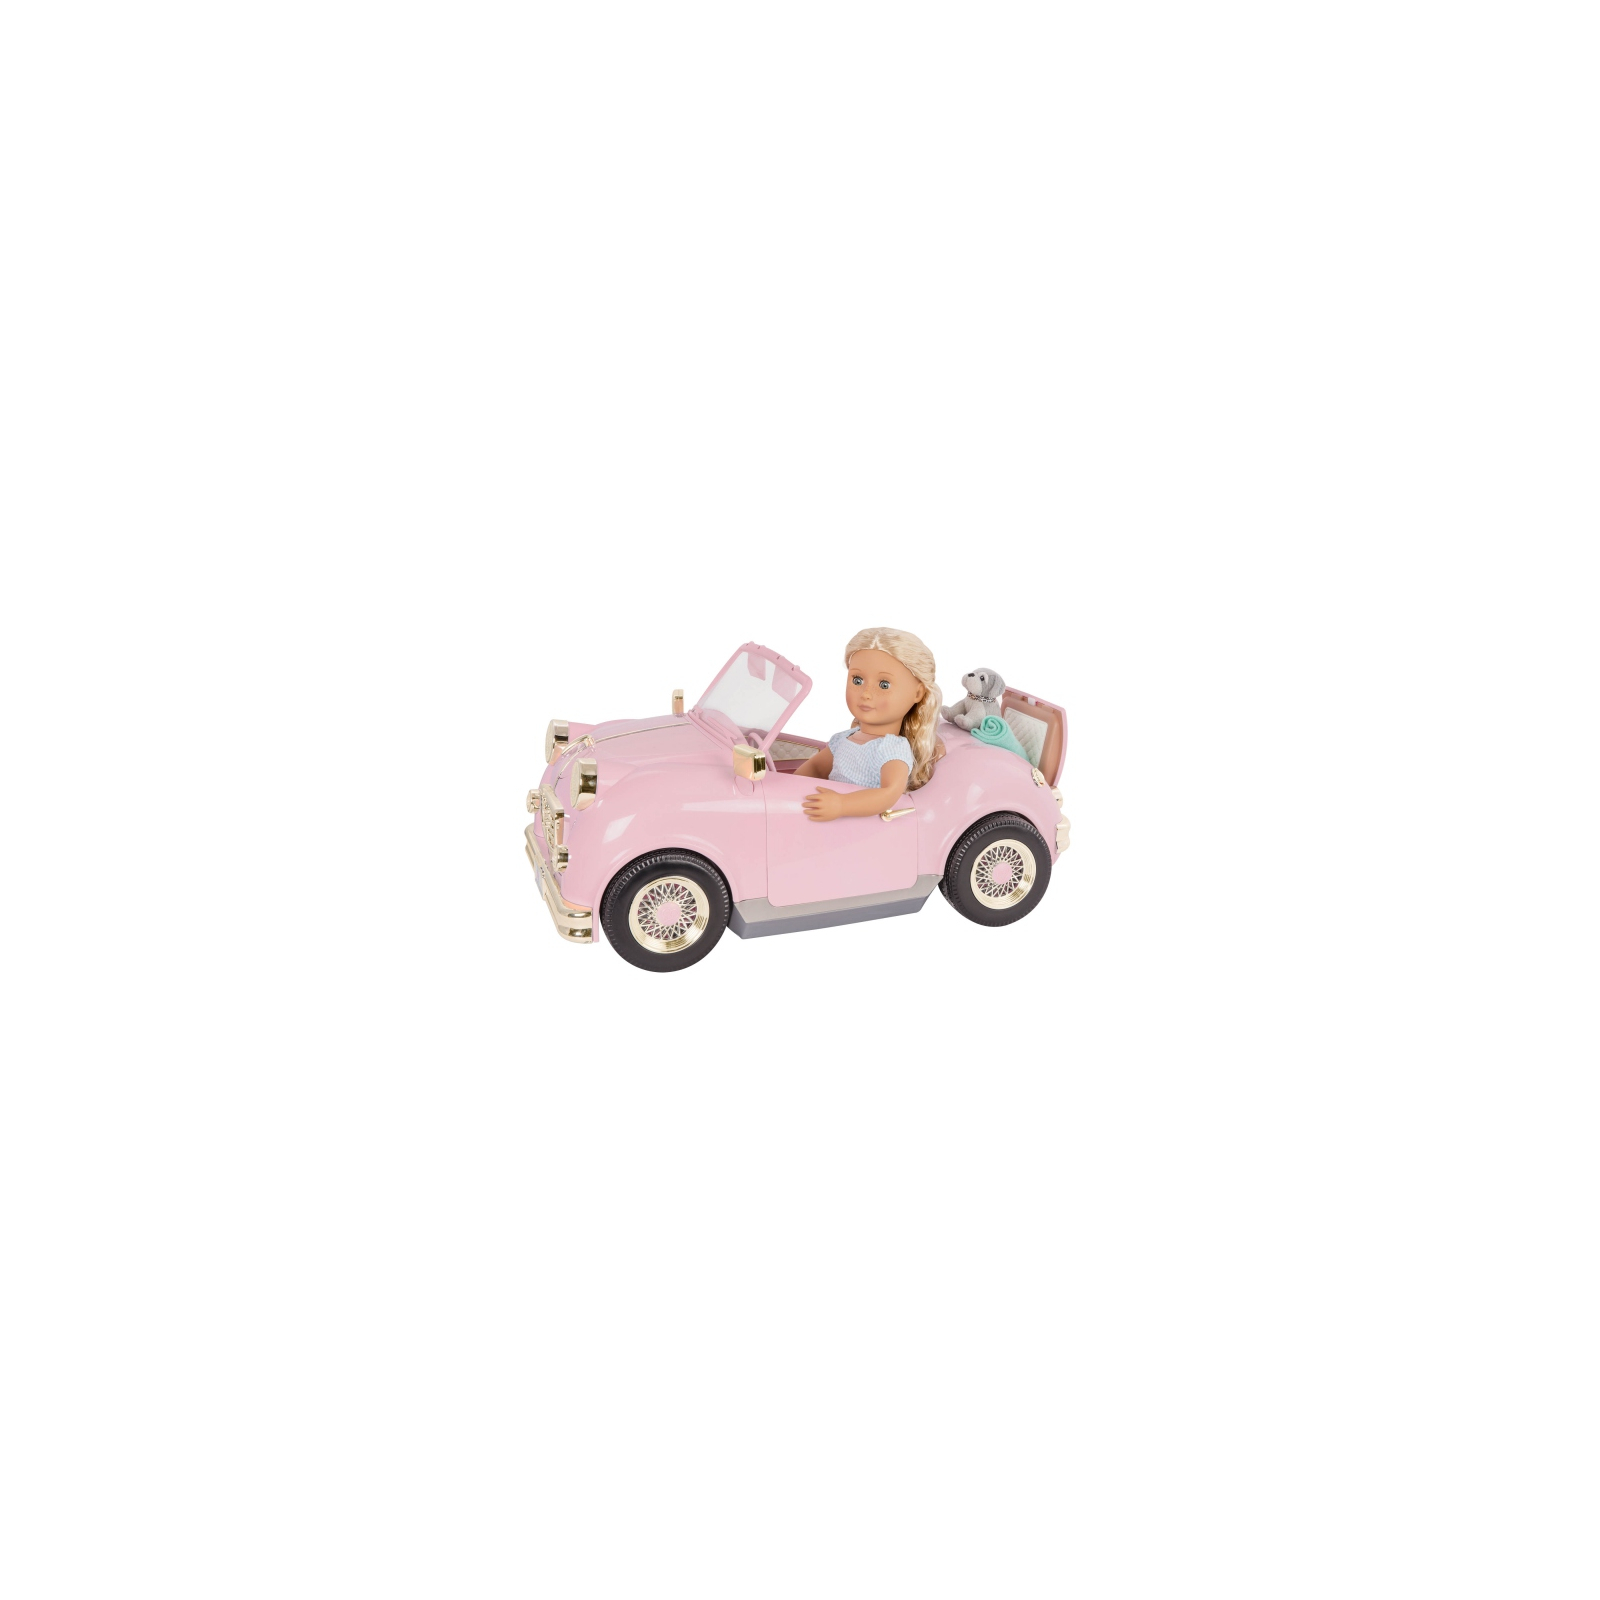 Аксессуар к кукле Our Generation Ретро автомобиль с открытым вверхом (BD67051Z) изображение 8